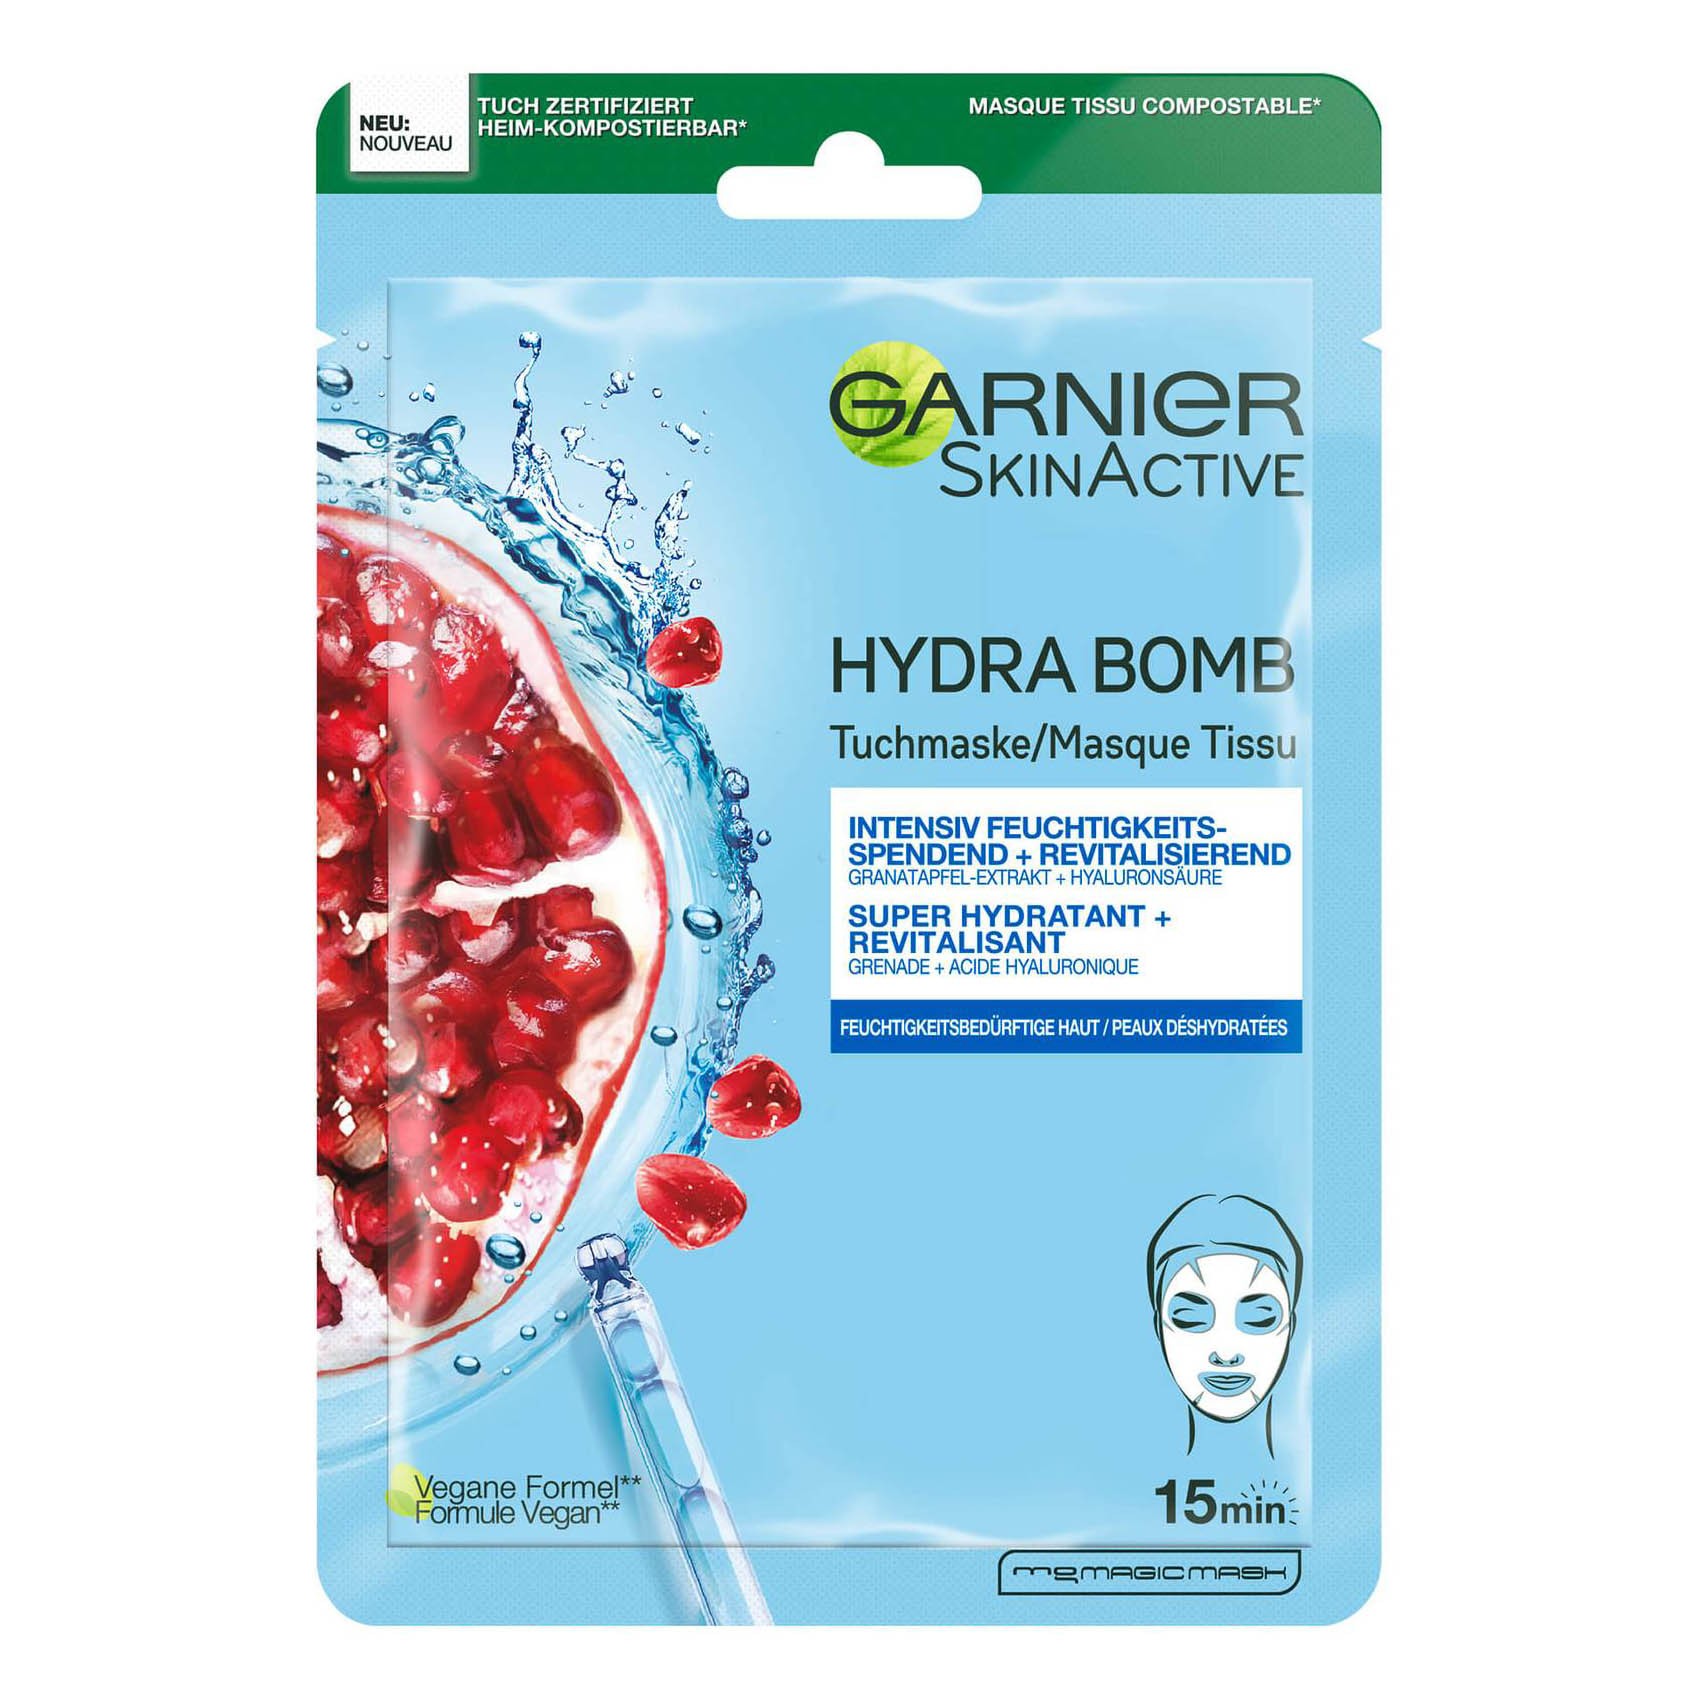 SkinActive Hydra Bomb Tuchmaske - Feuchtigkeitsspendend & Revitalisierend